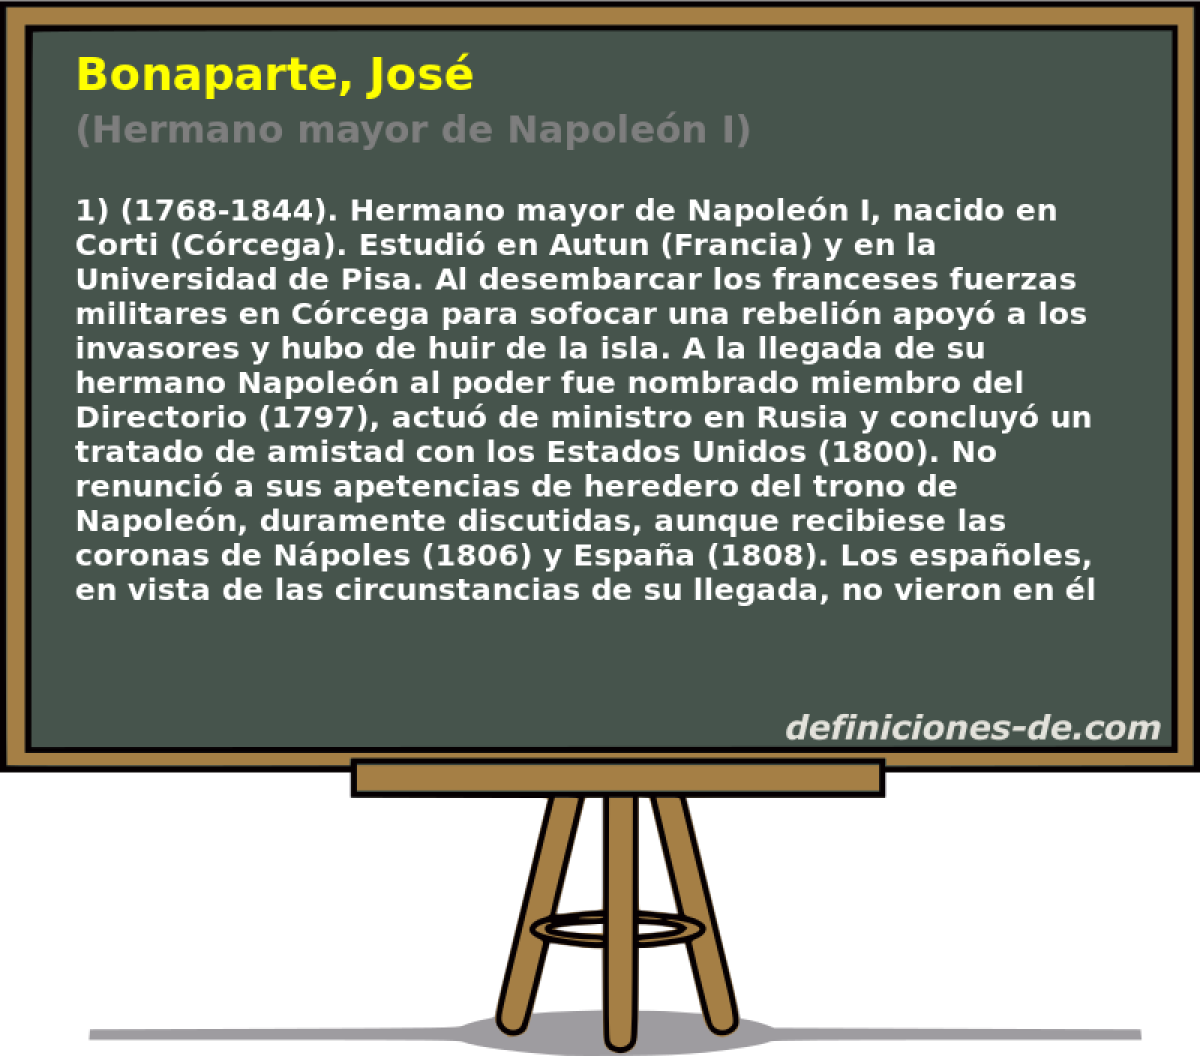 Bonaparte, Jos (Hermano mayor de Napolen I)